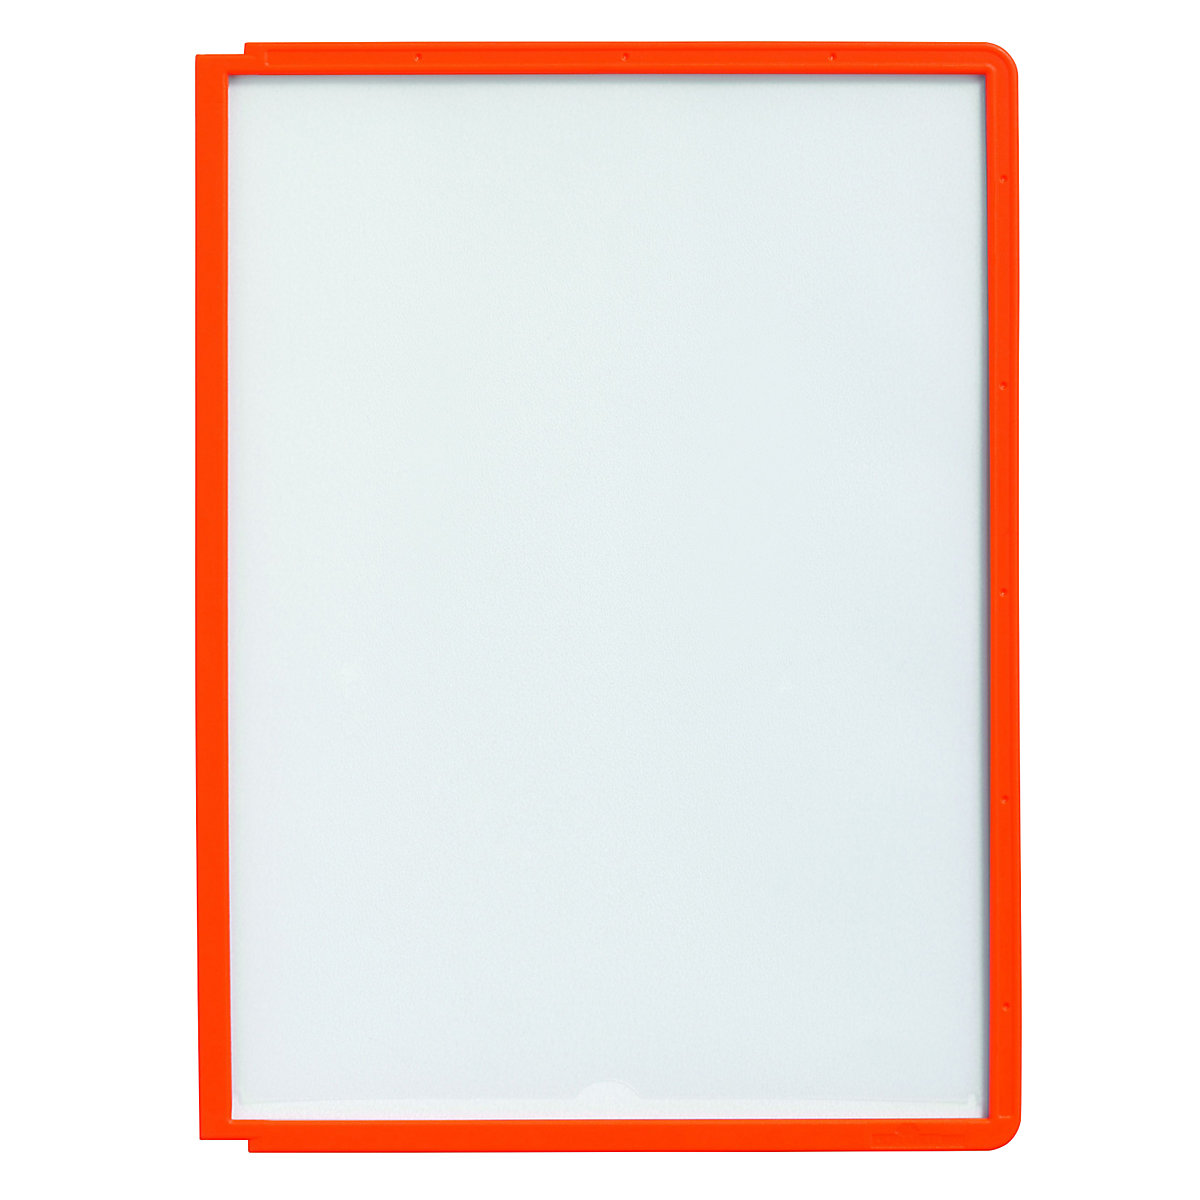 Klarsichttafel mit Profilrahmen DURABLE, für DIN A4, VE 10 Stk, orange-4